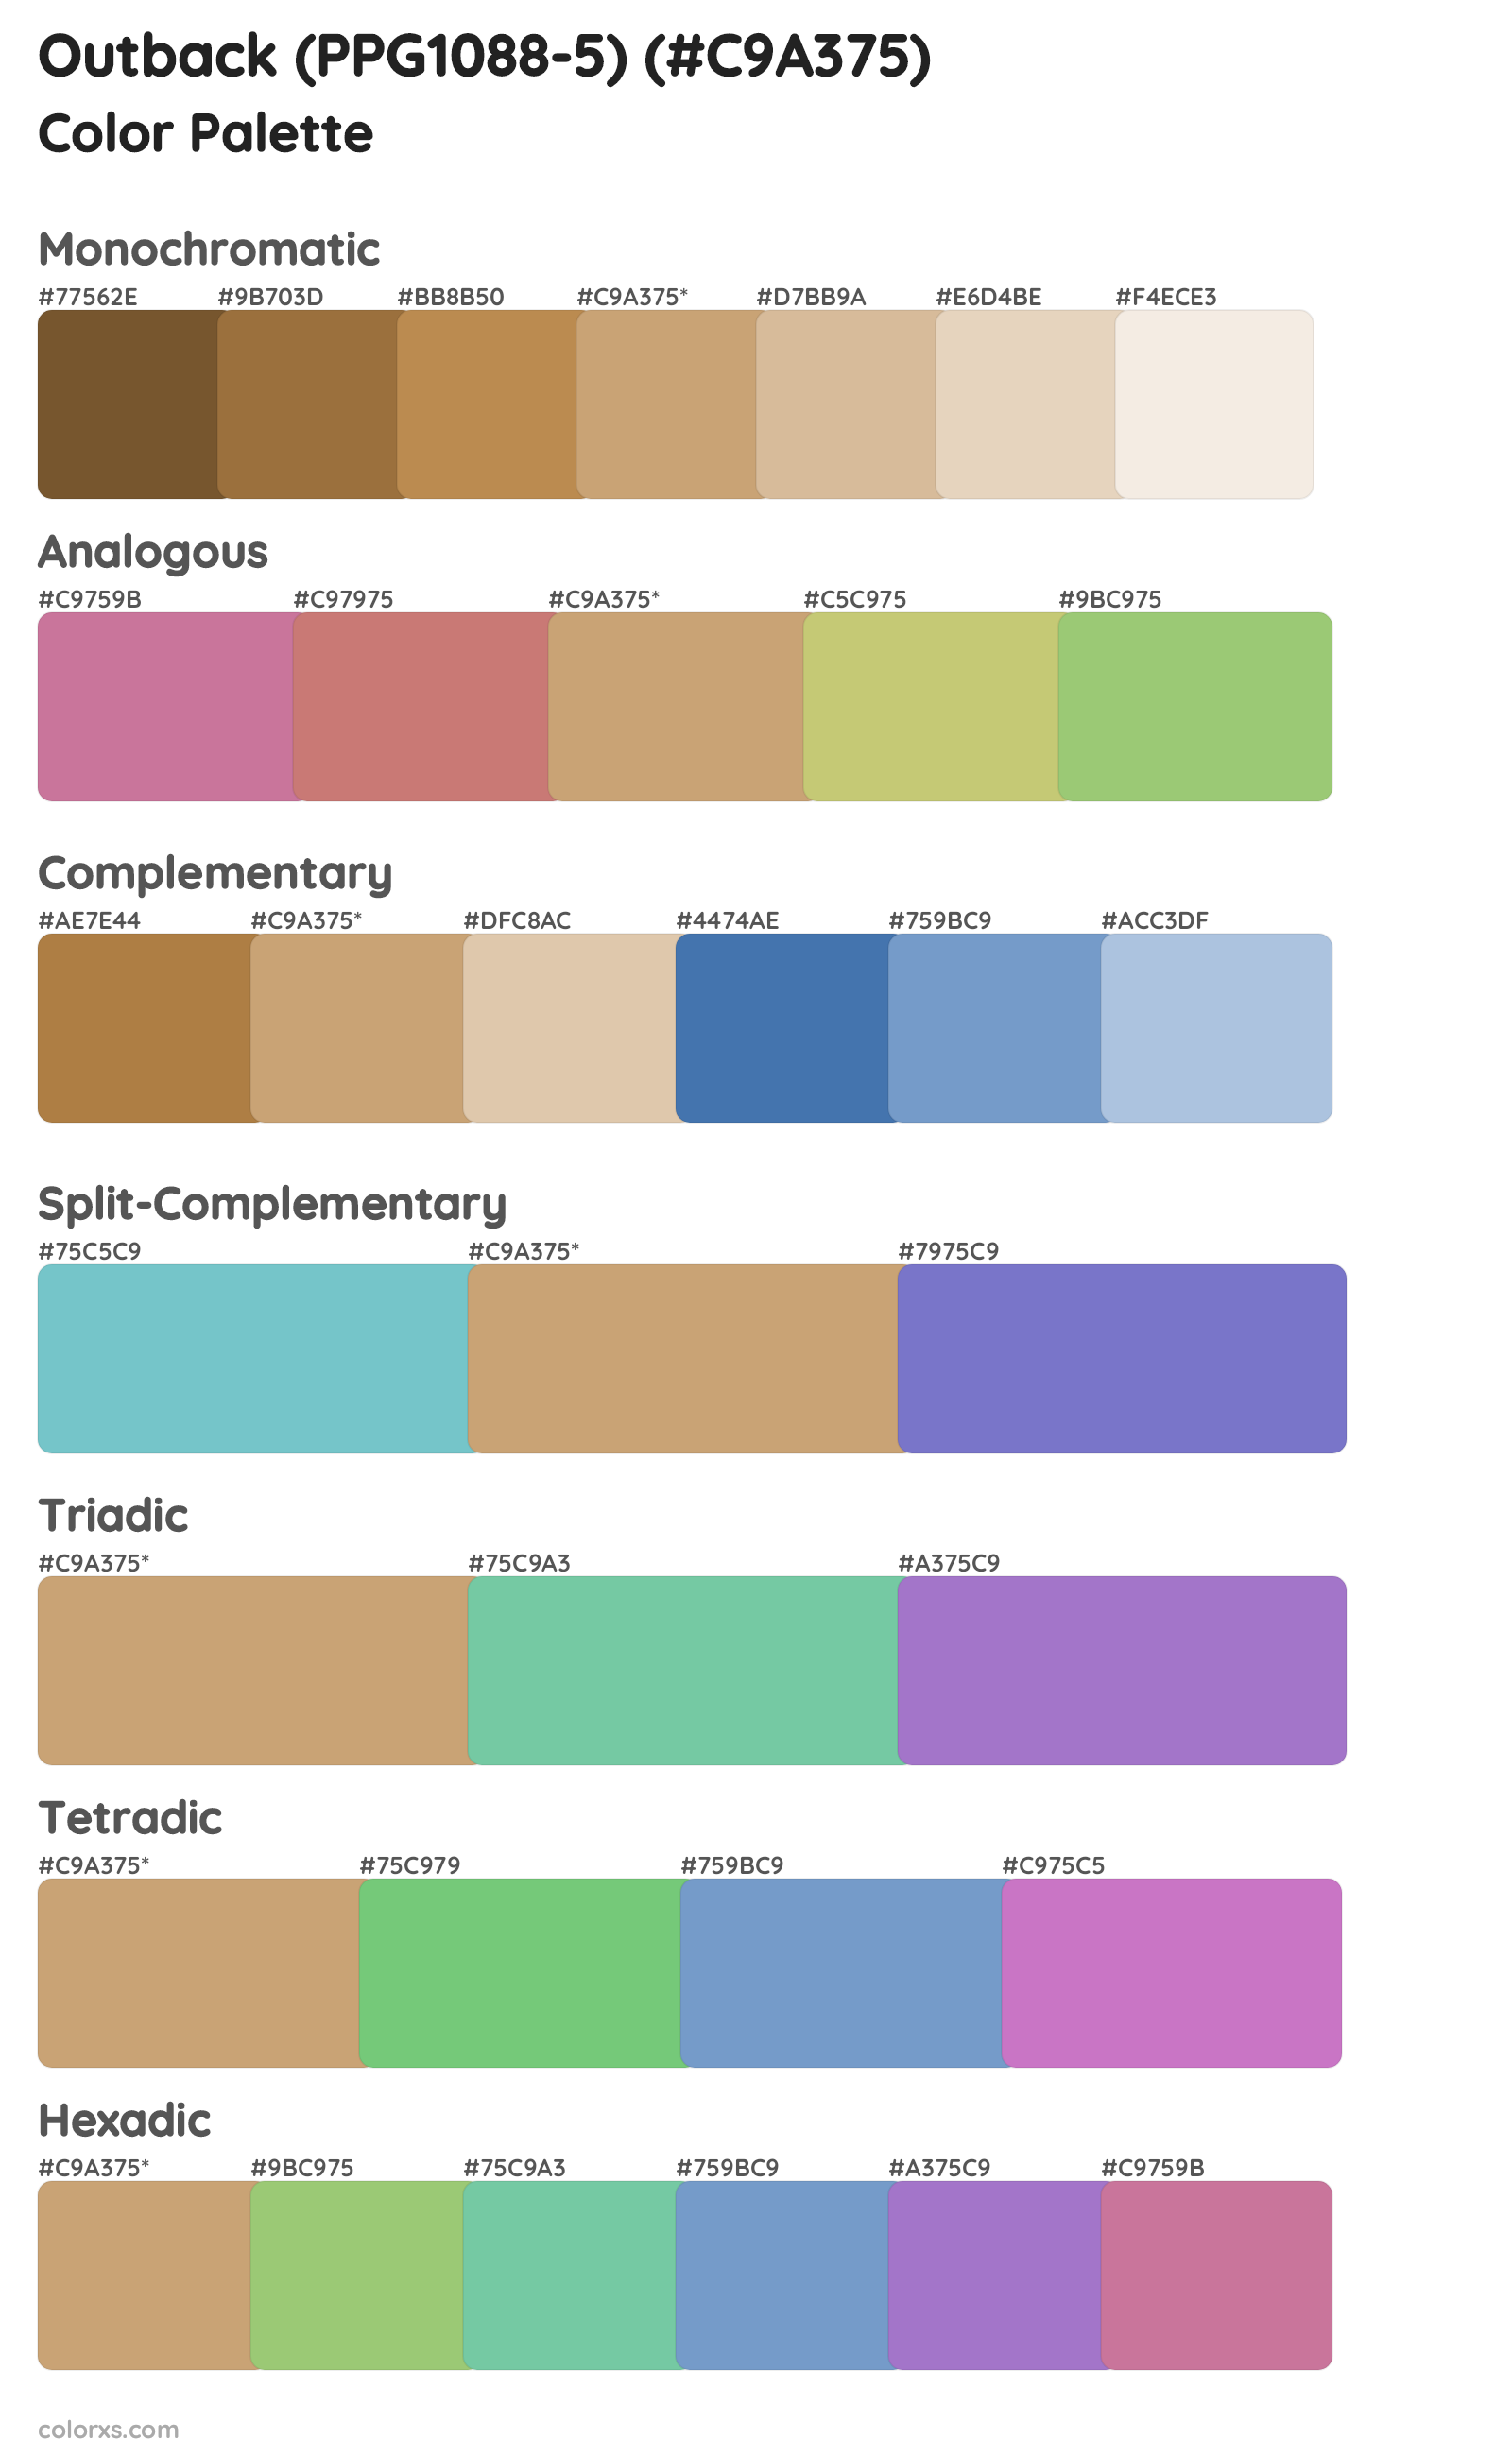 Outback (PPG1088-5) Color Scheme Palettes